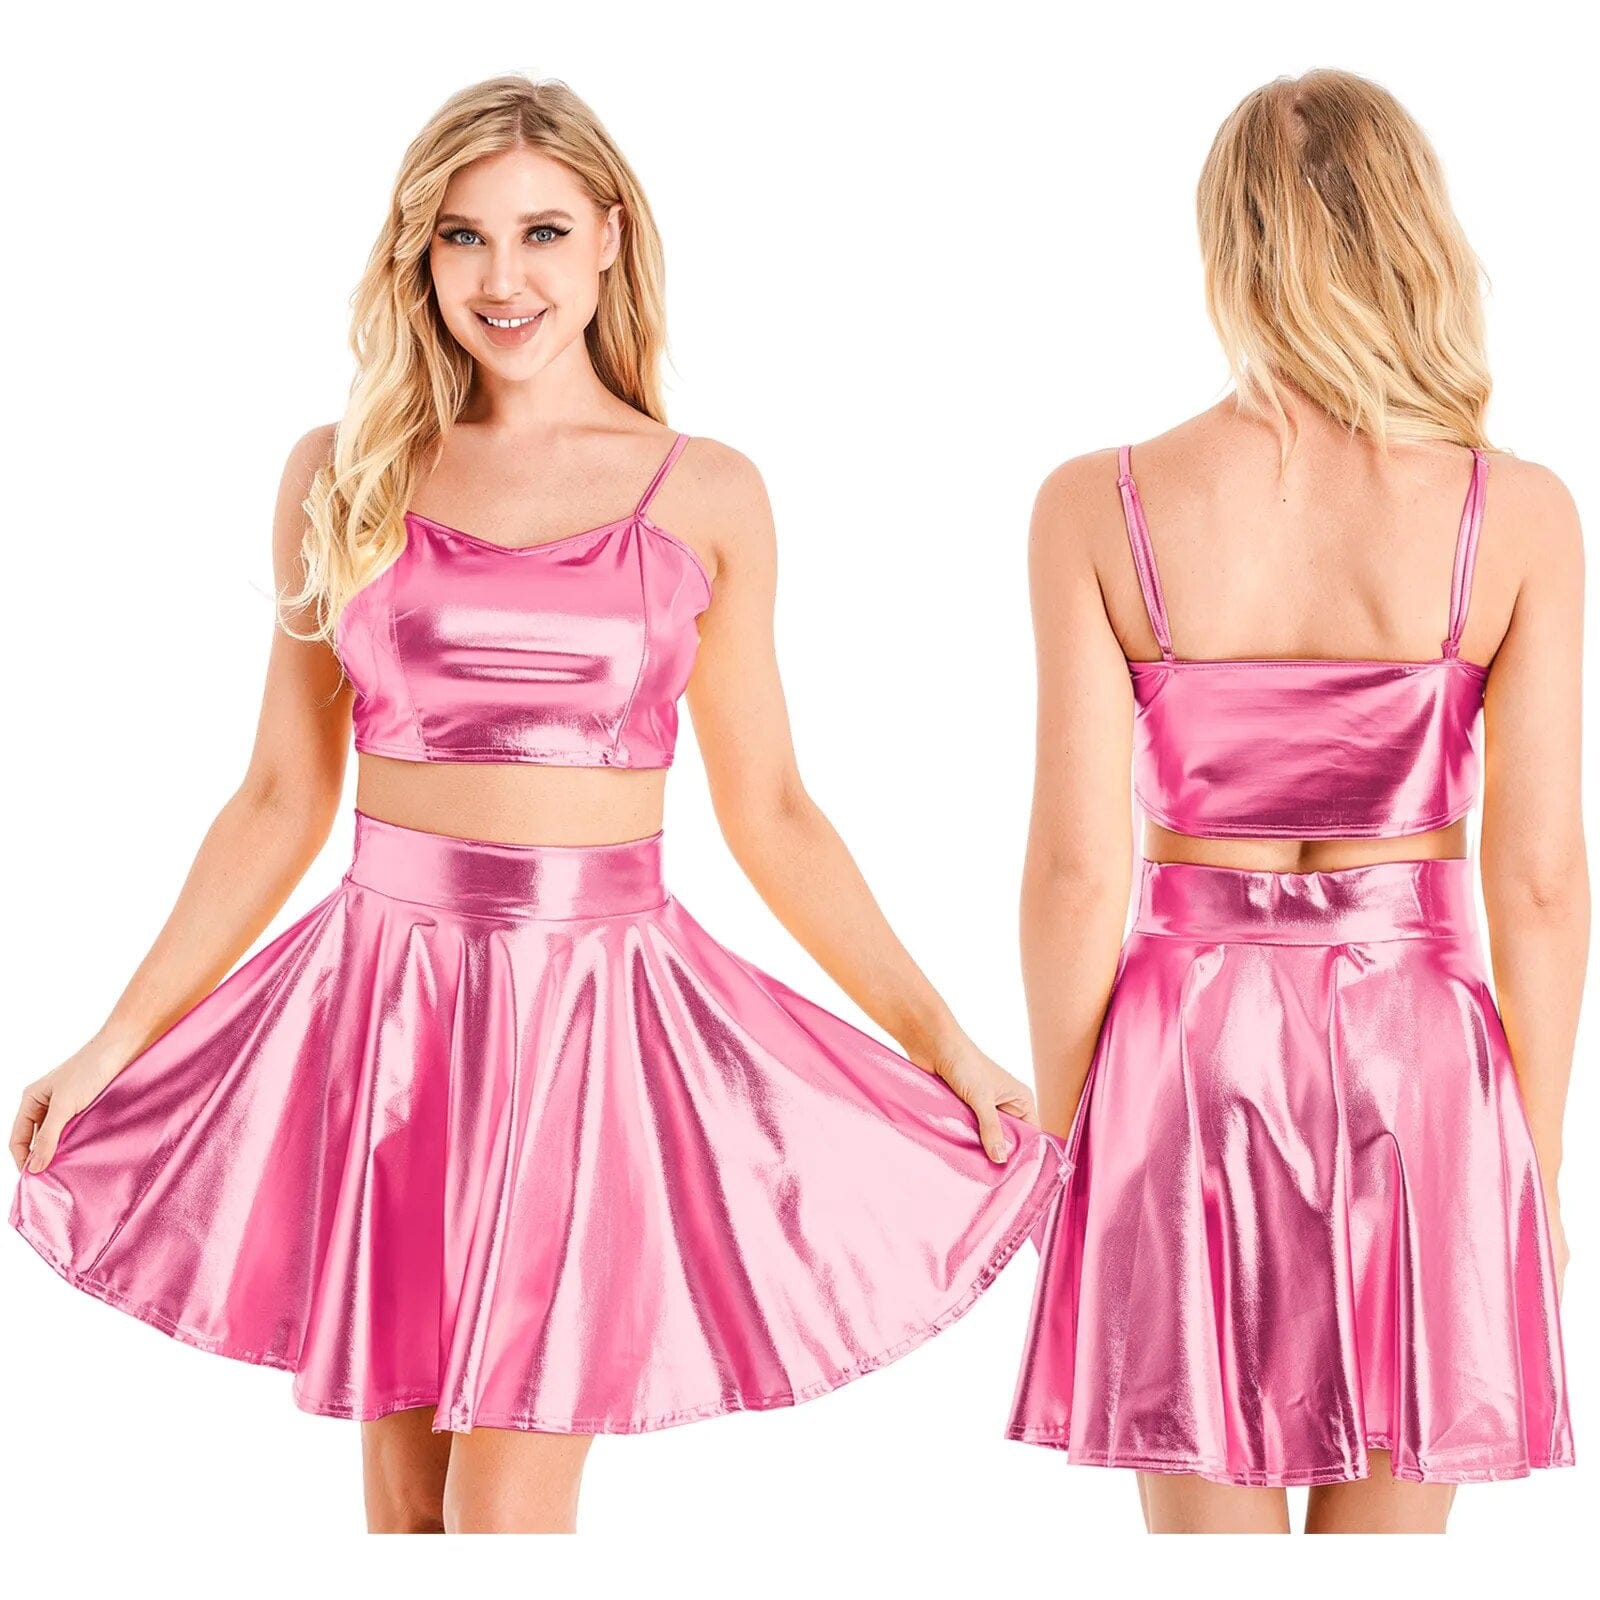 Kinky Cloth Pink A / S Metallic Shiny Camisole Skirt Sets